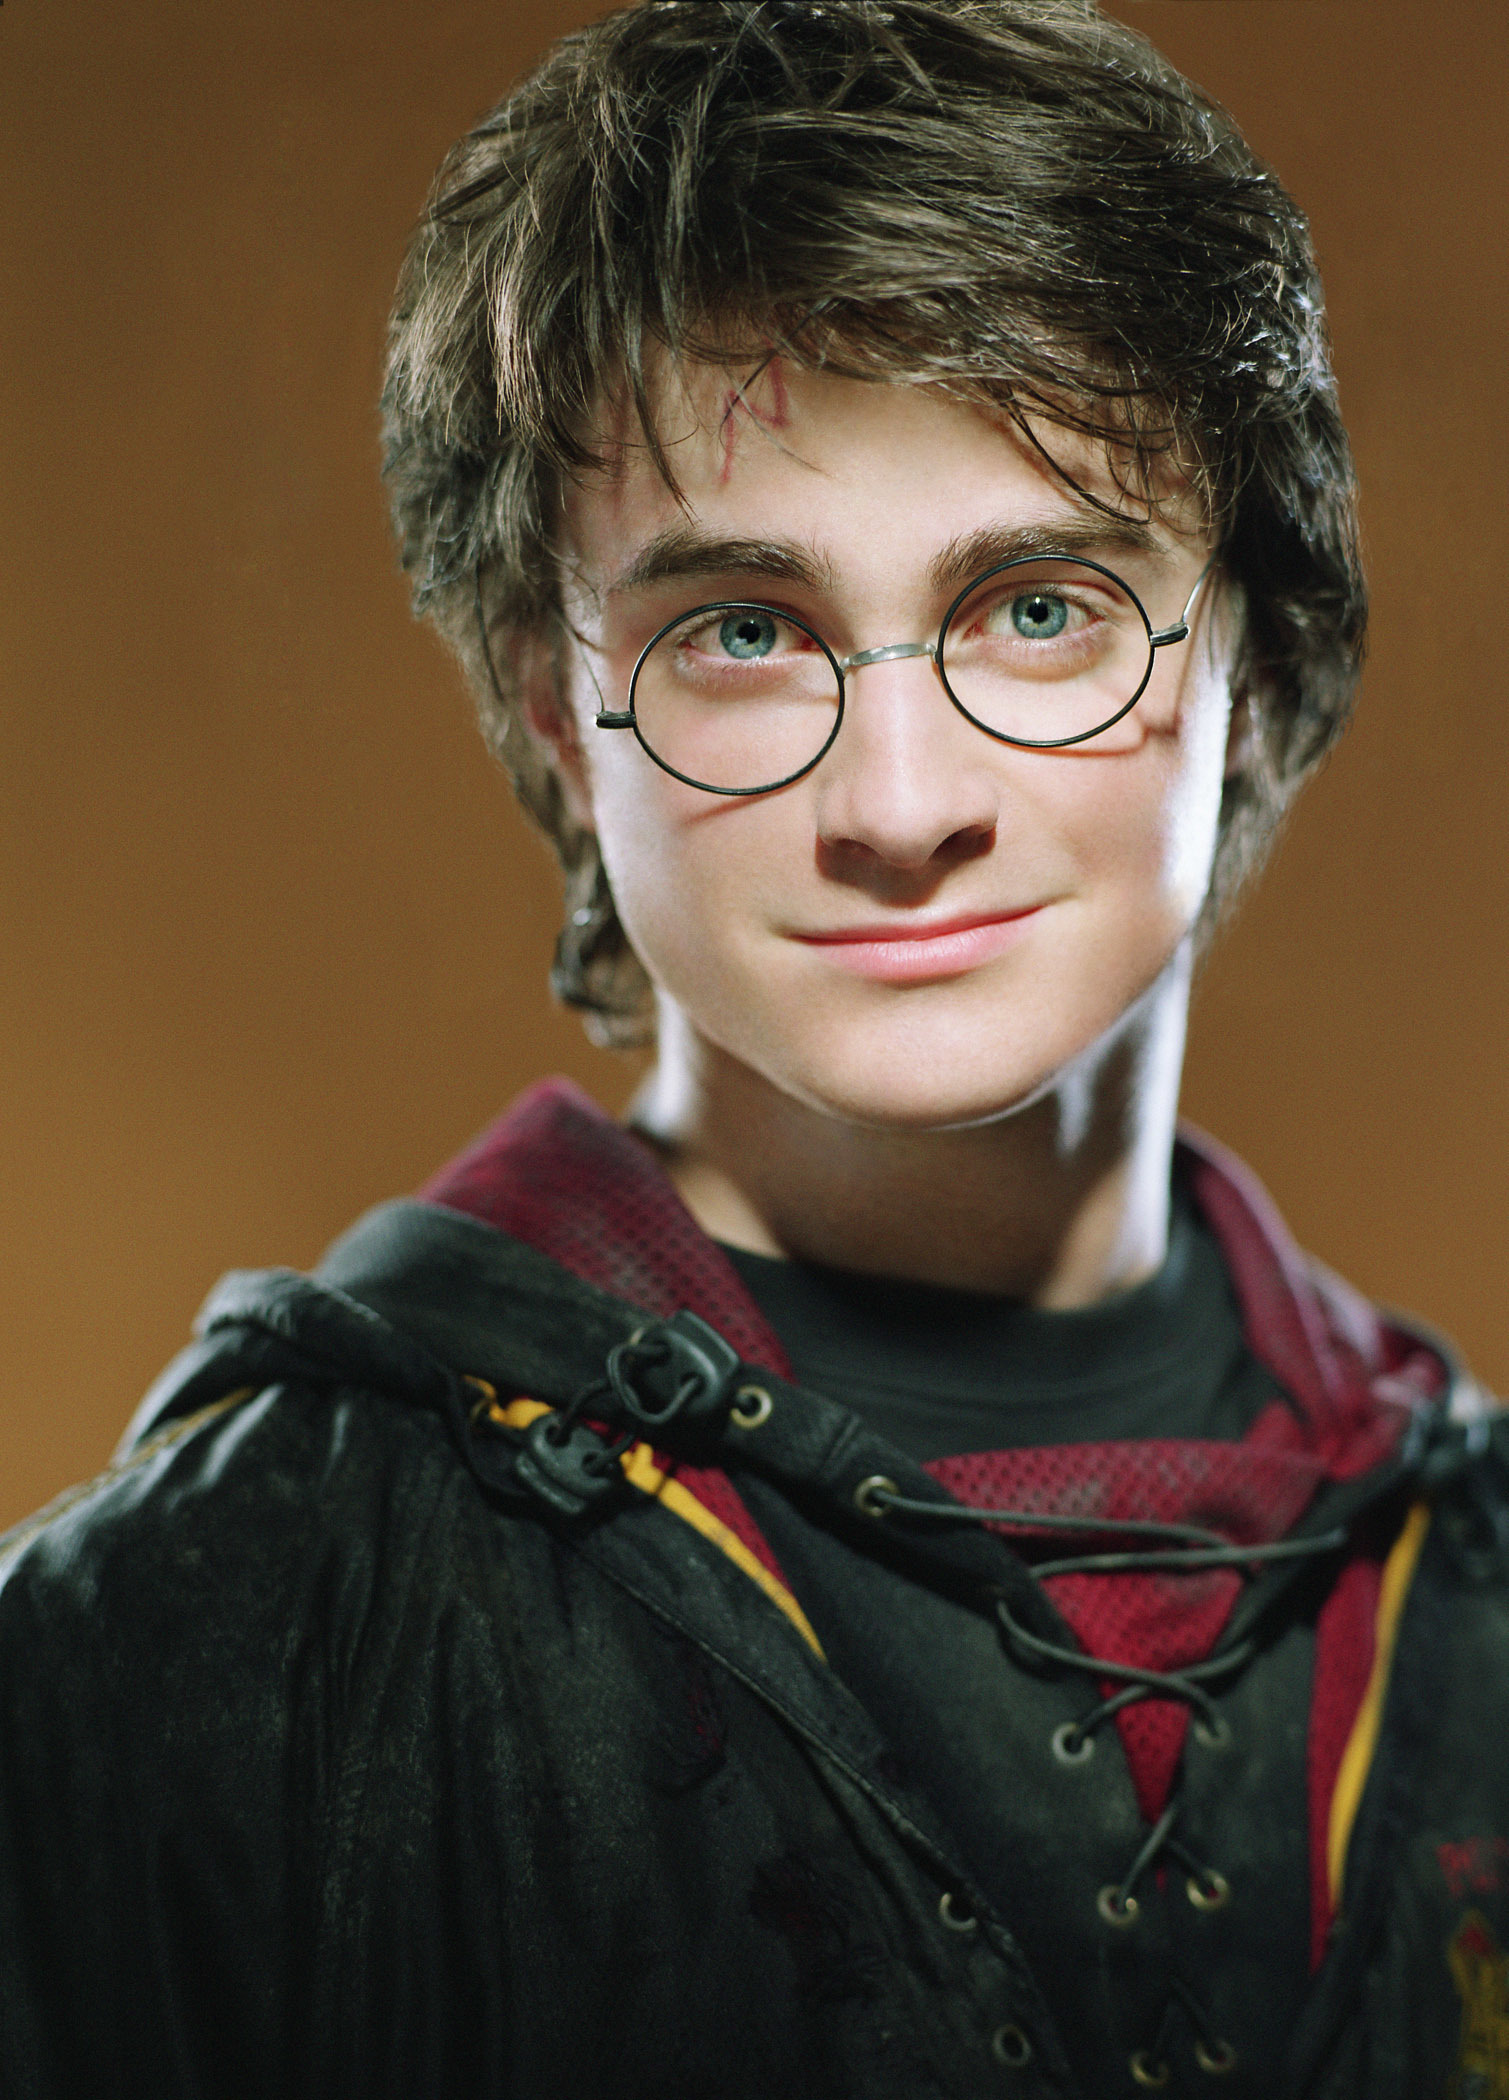 Hình ảnh Harry Potter đẹp chất lượng cao dành cho các Fan